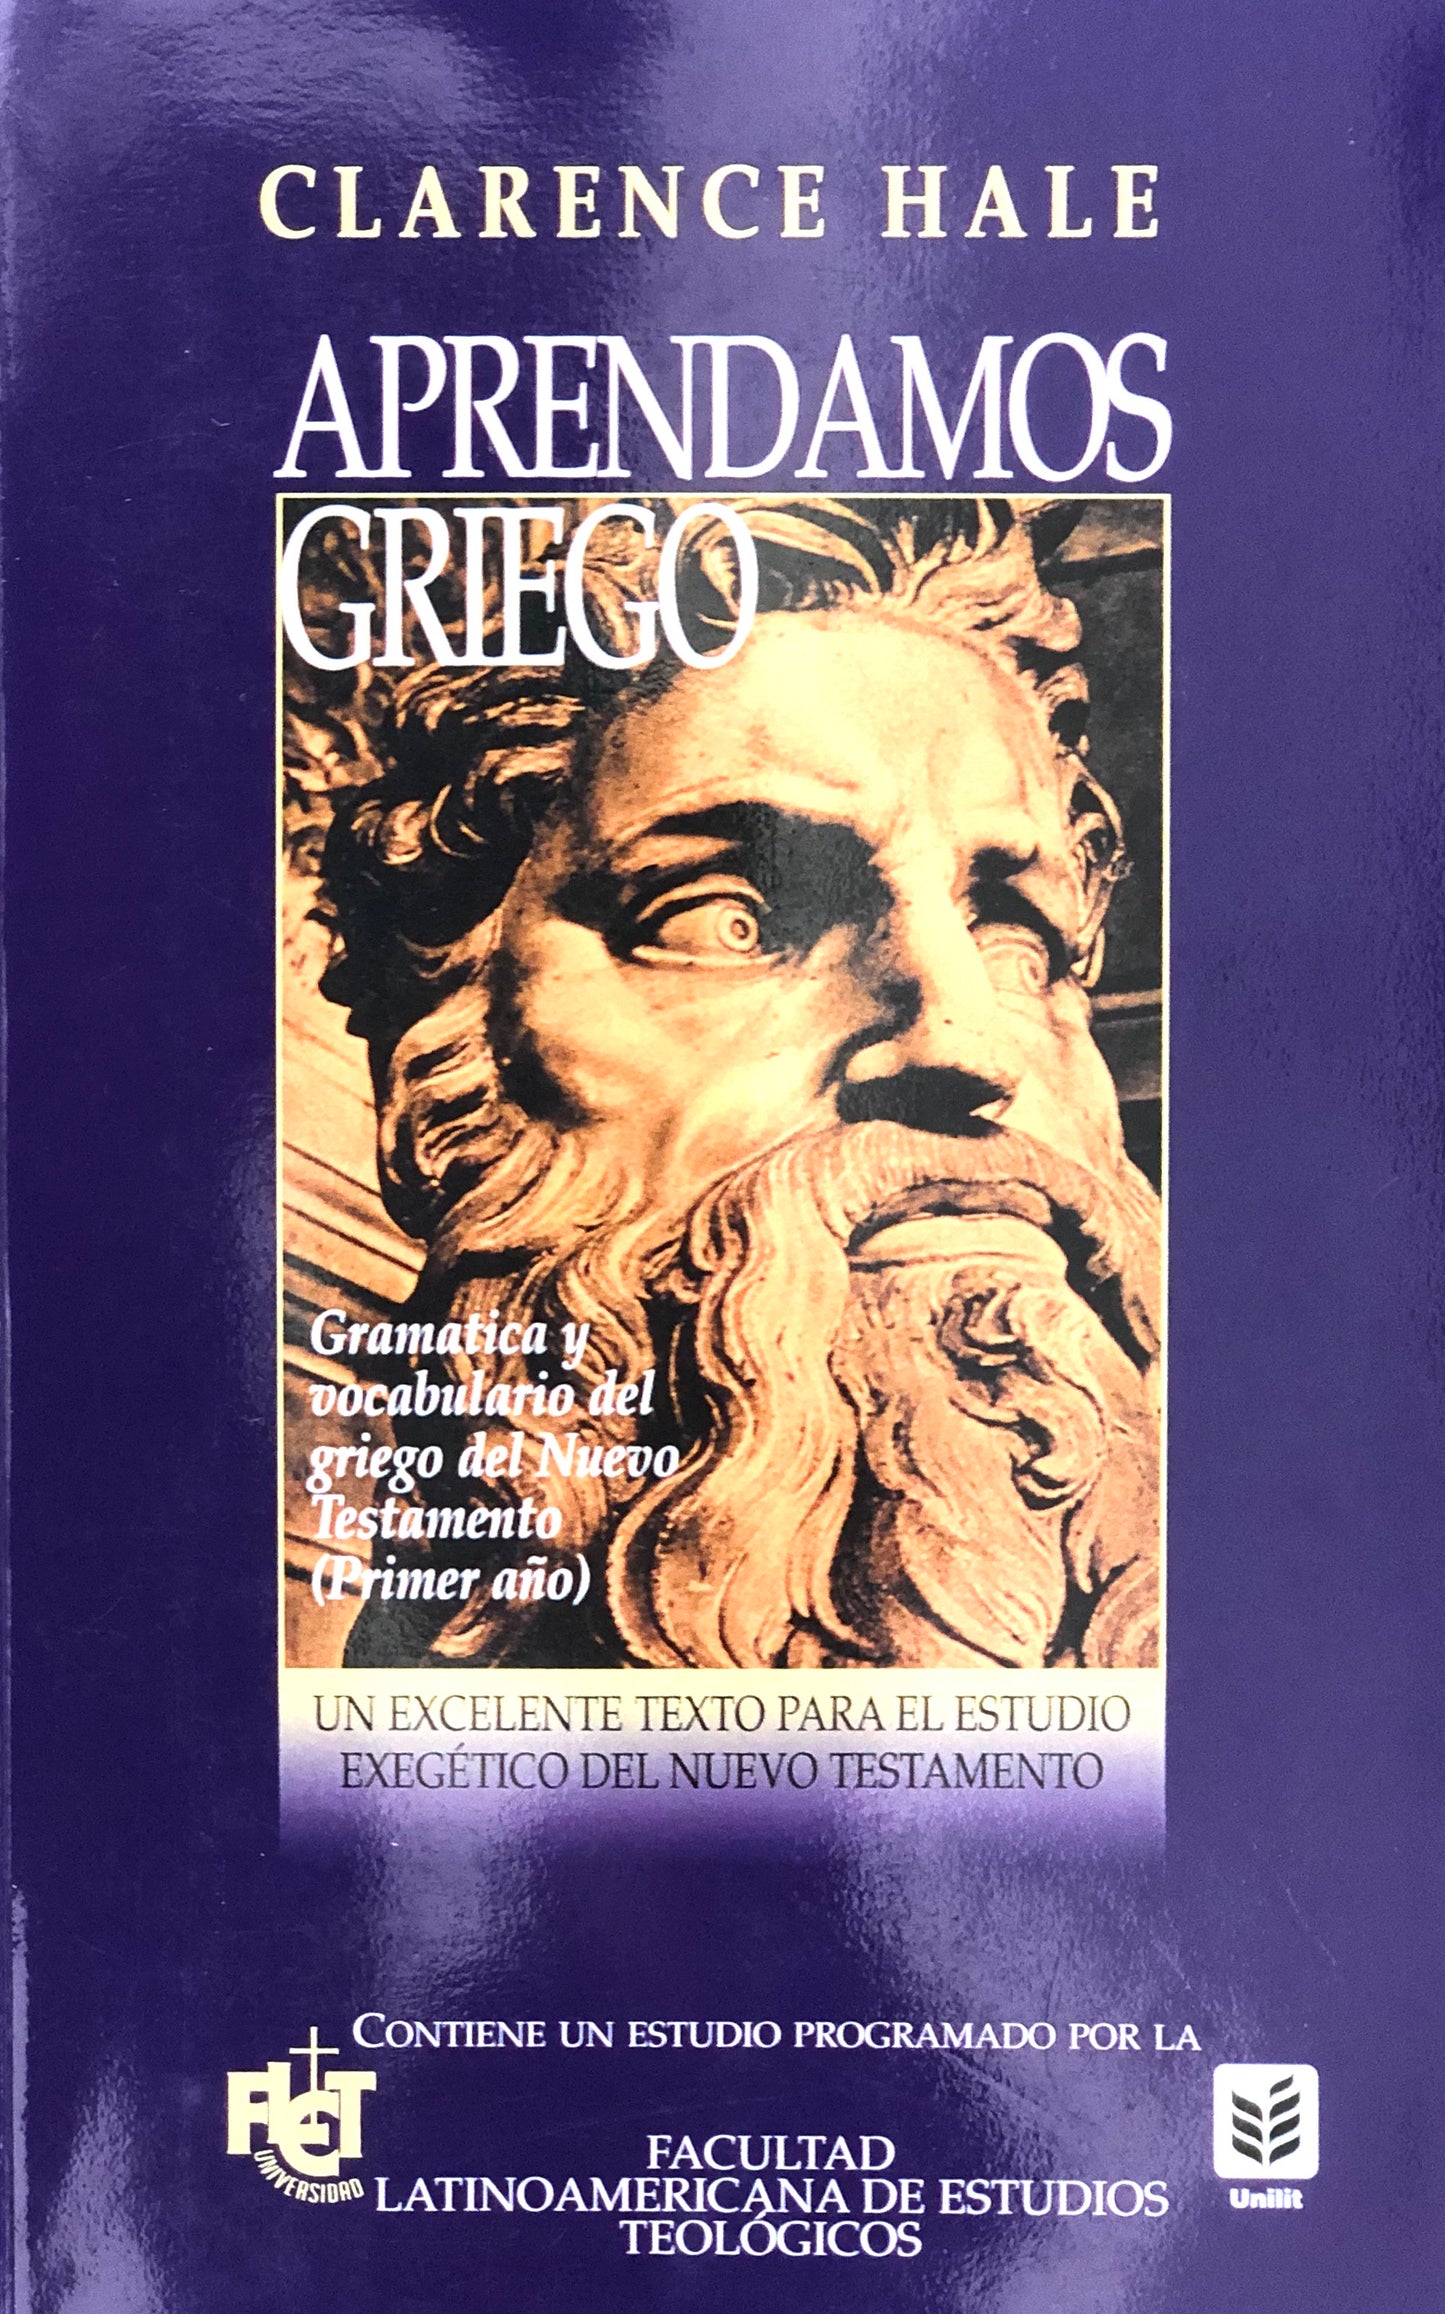 Aprendamos Griego - Gramatica y vocabulario del griego del Nuevo Testamento - Clarence Hale